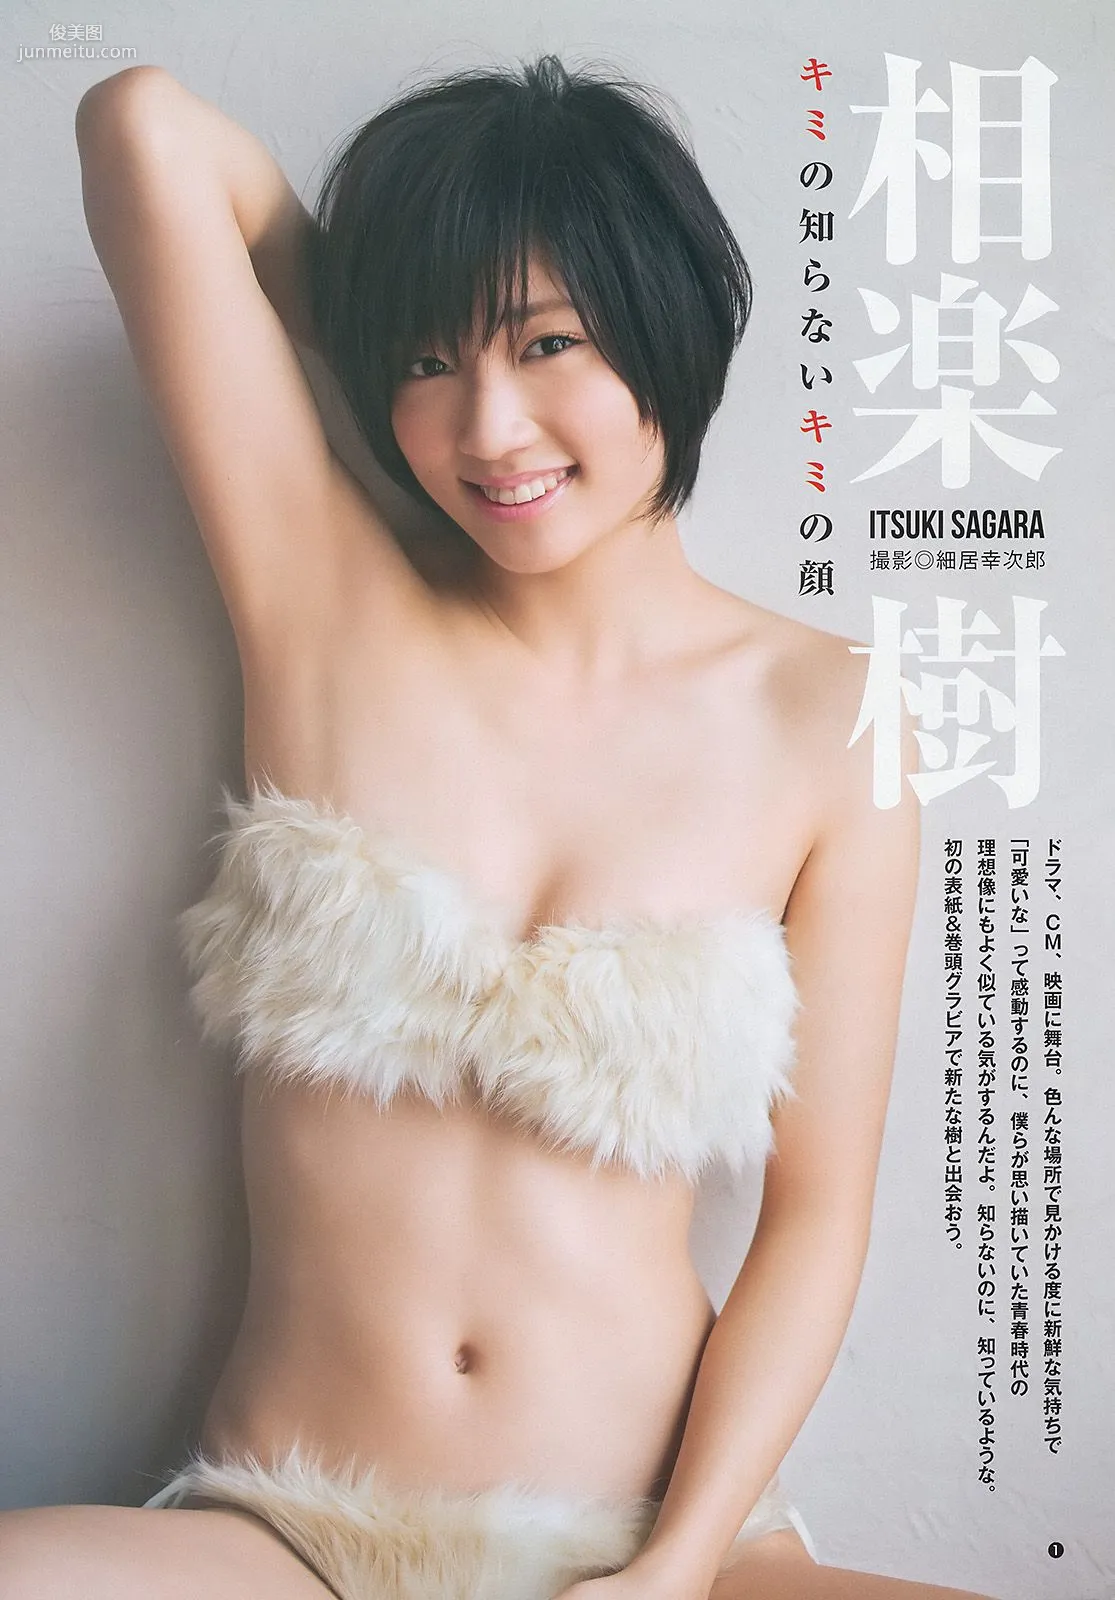 相楽樹 糸山千恵 優希美青 [Weekly Young Jump] 2013年No.50 写真杂志2